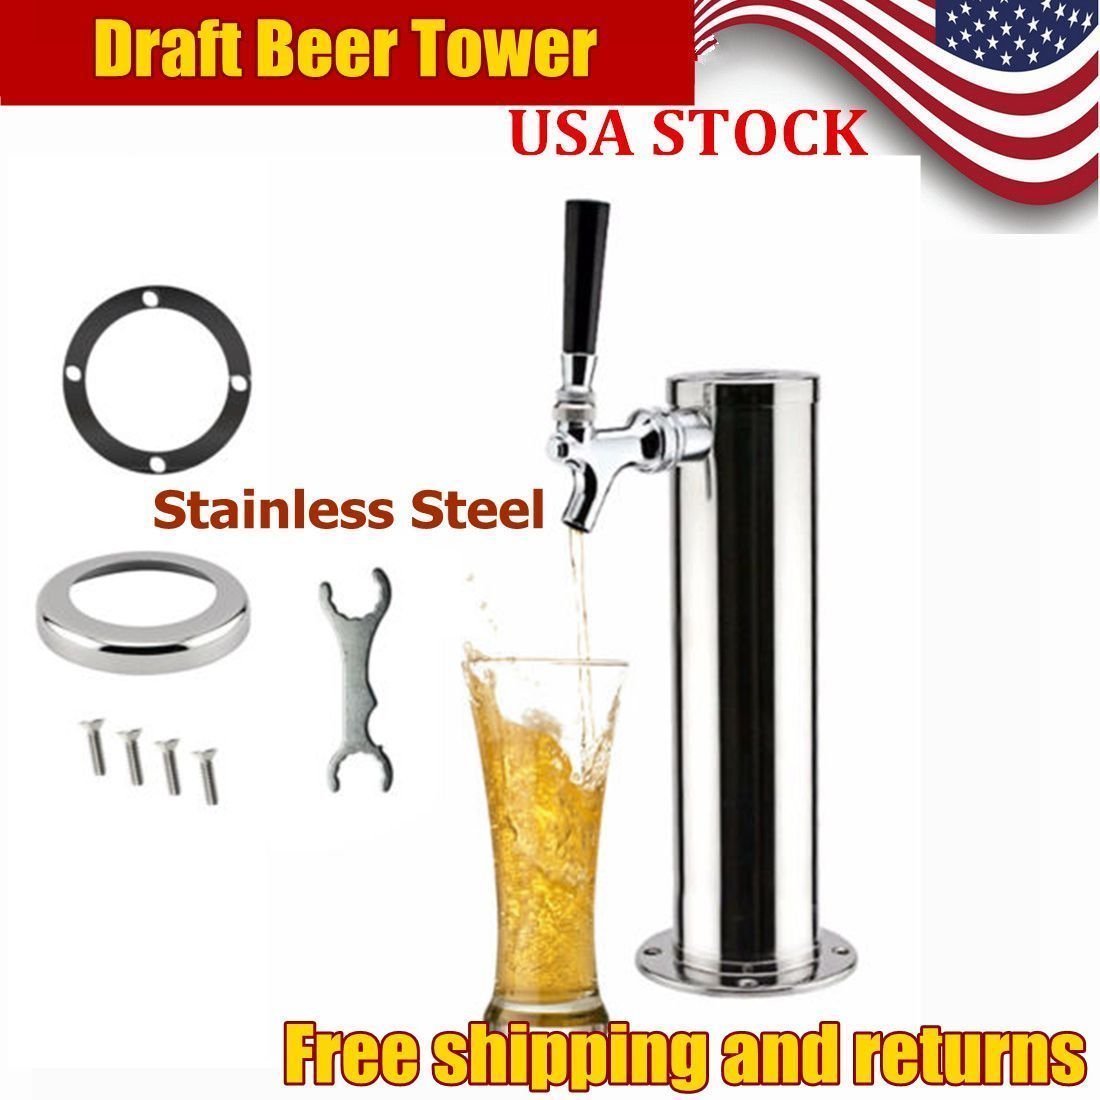 Torre di birra d'argento, erogatore di birra in acciaio inox (3 rubinetti)